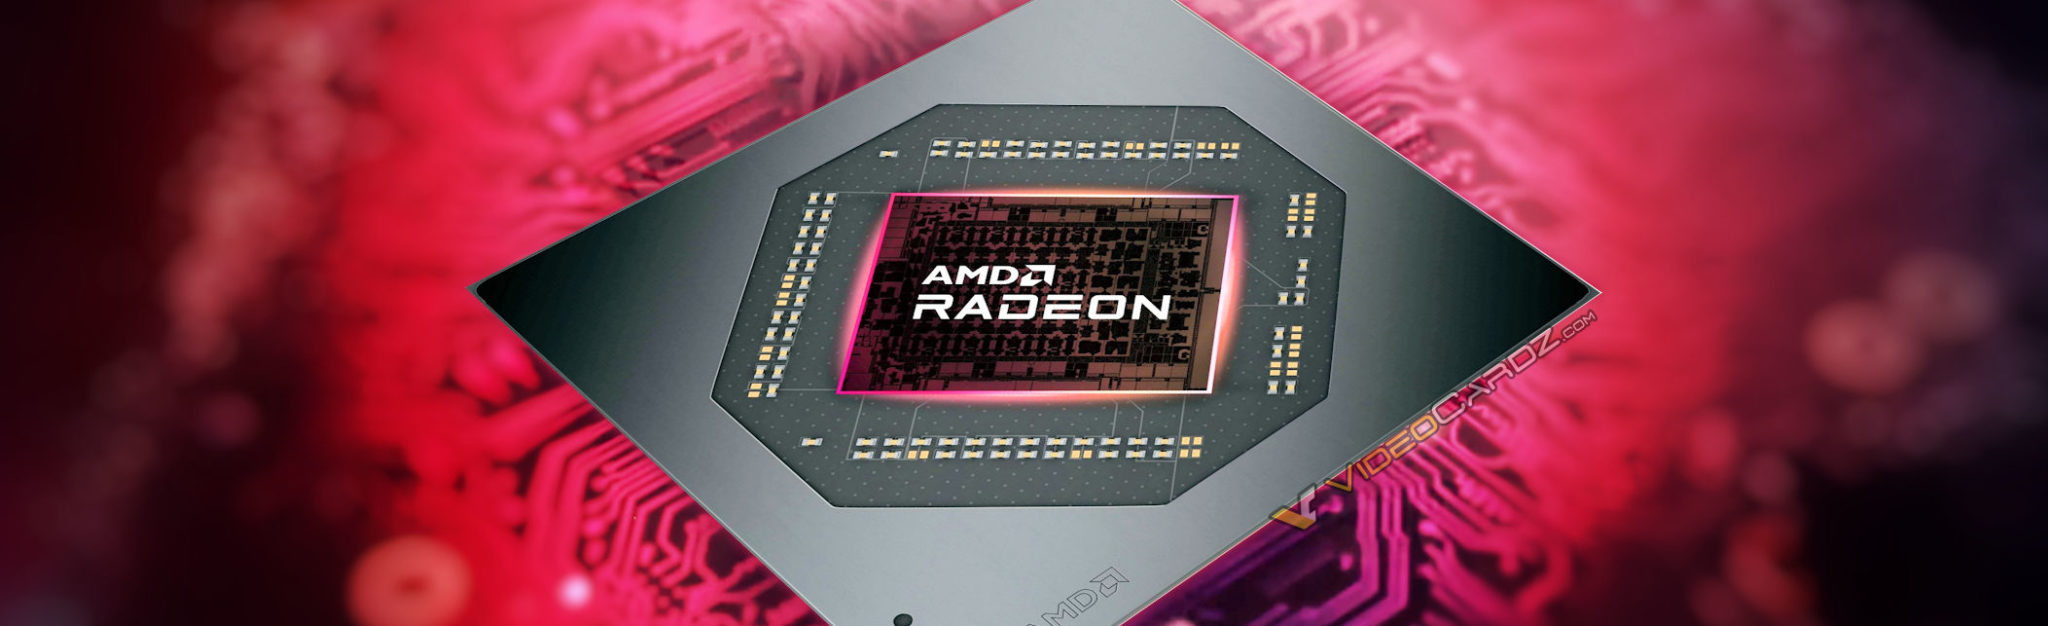 AMD-RADEON-7000-MOBILE-NAVI-33-HERO-banner-2048x626.jpg